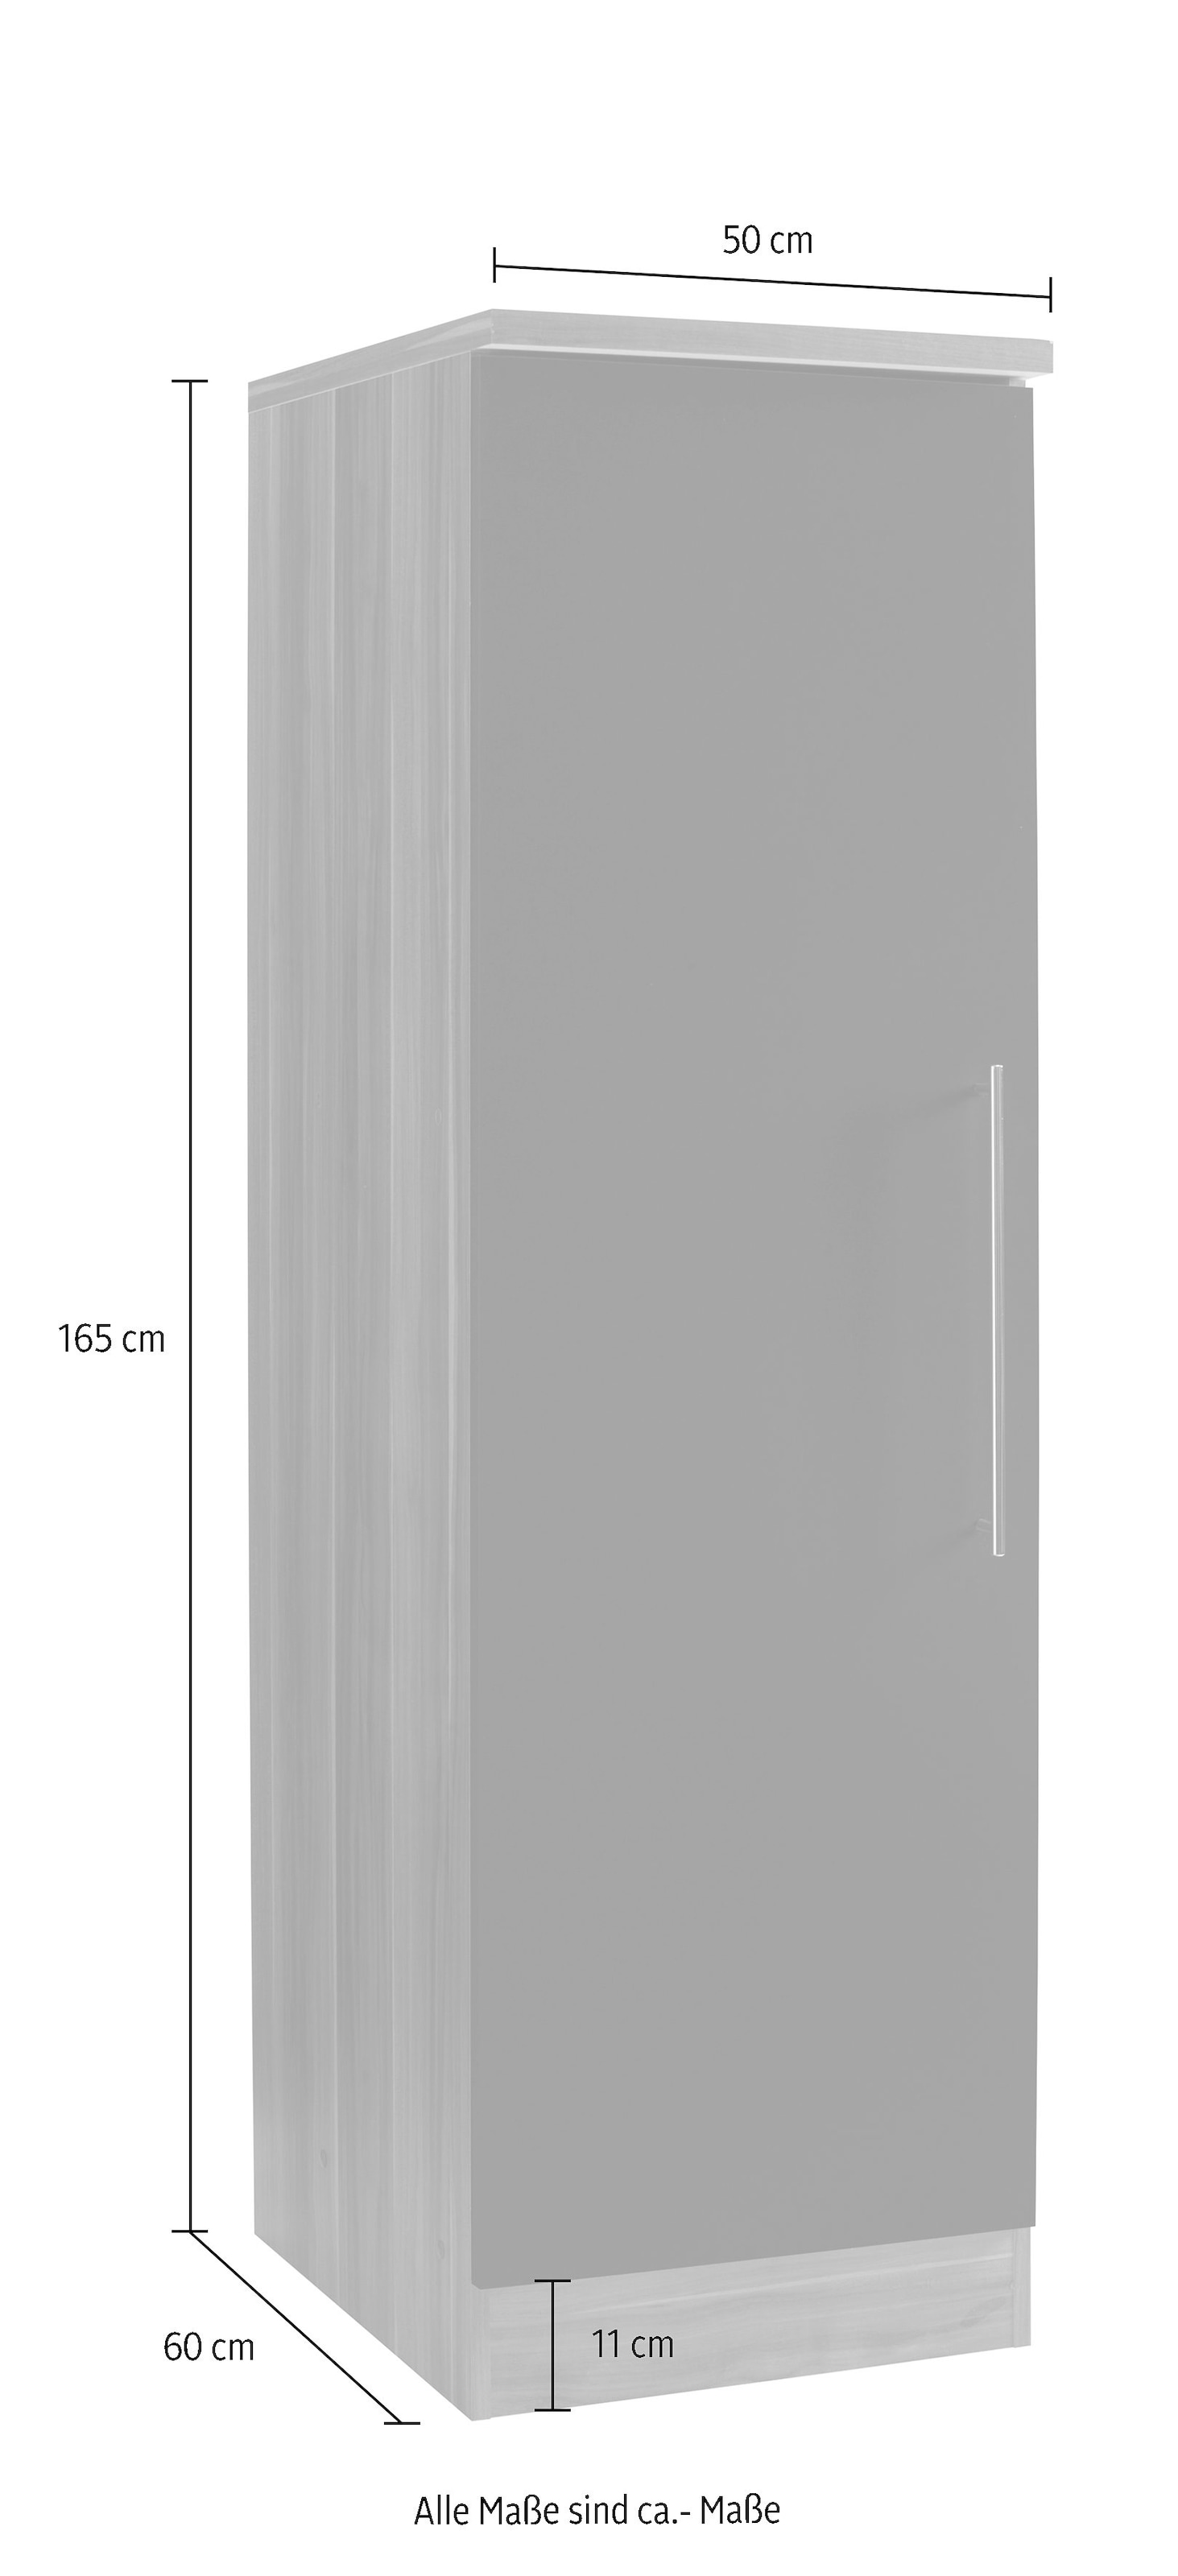 HELD MÖBEL Seitenschrank »Samos«, 50 cm breit günstig kaufen